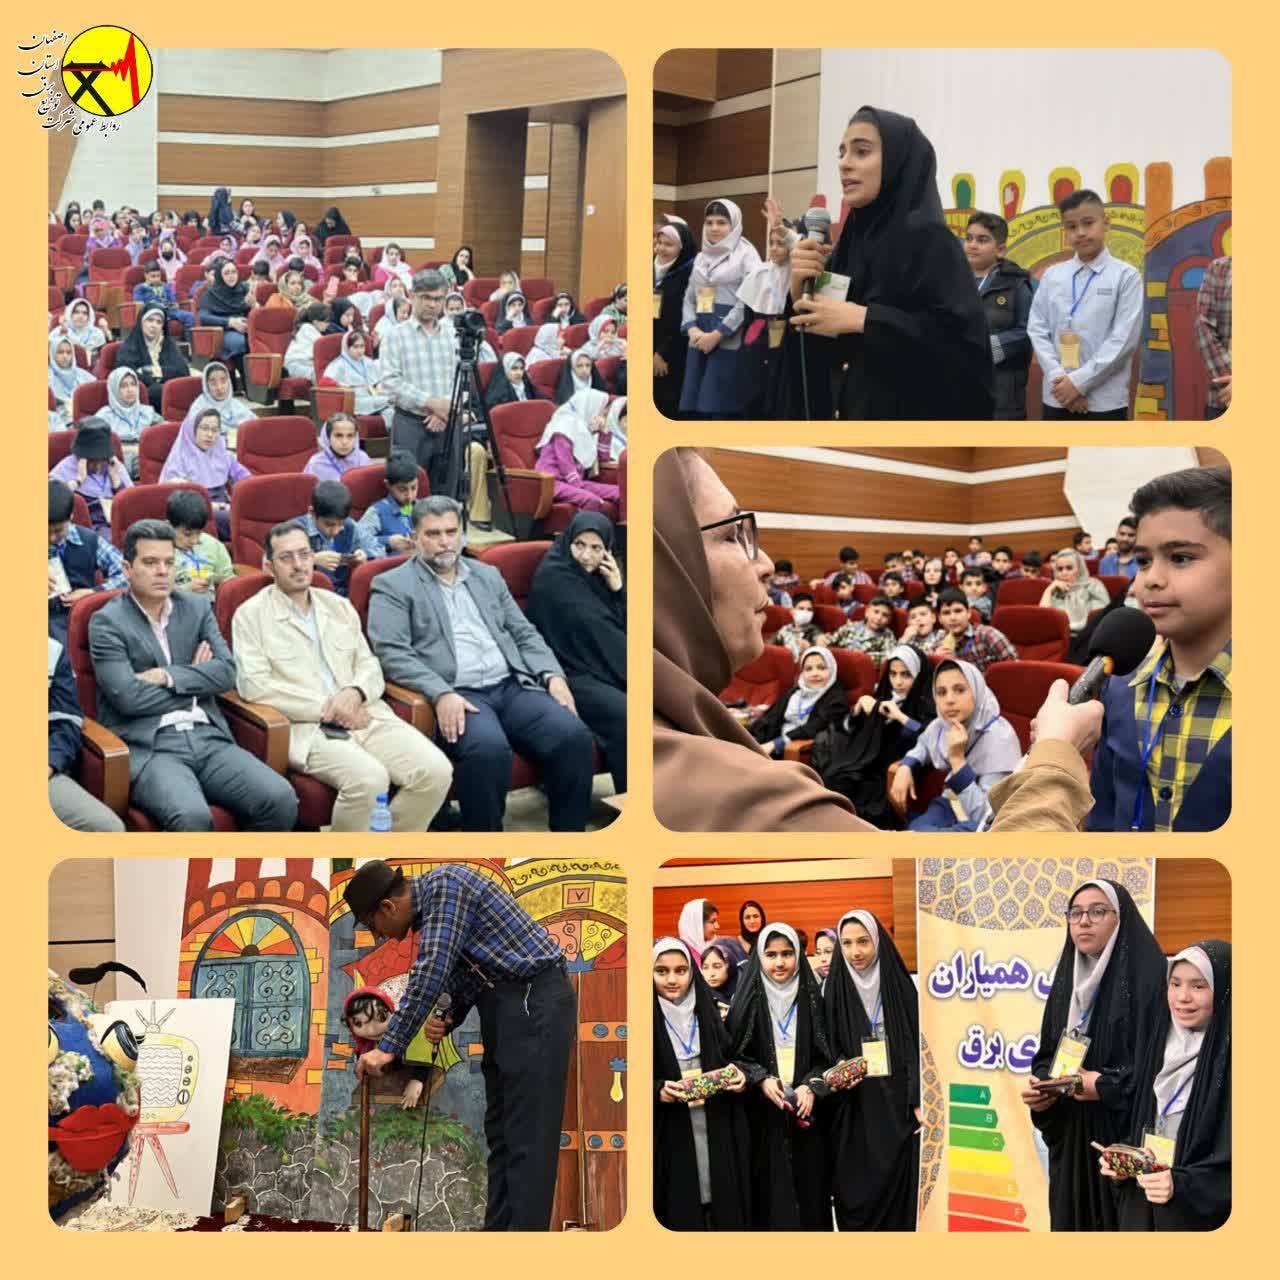 اولین گردهمایی “همیاران انرژی” با حضور ۲۵۰ دانش آموز در شهرداری شاهین شهر